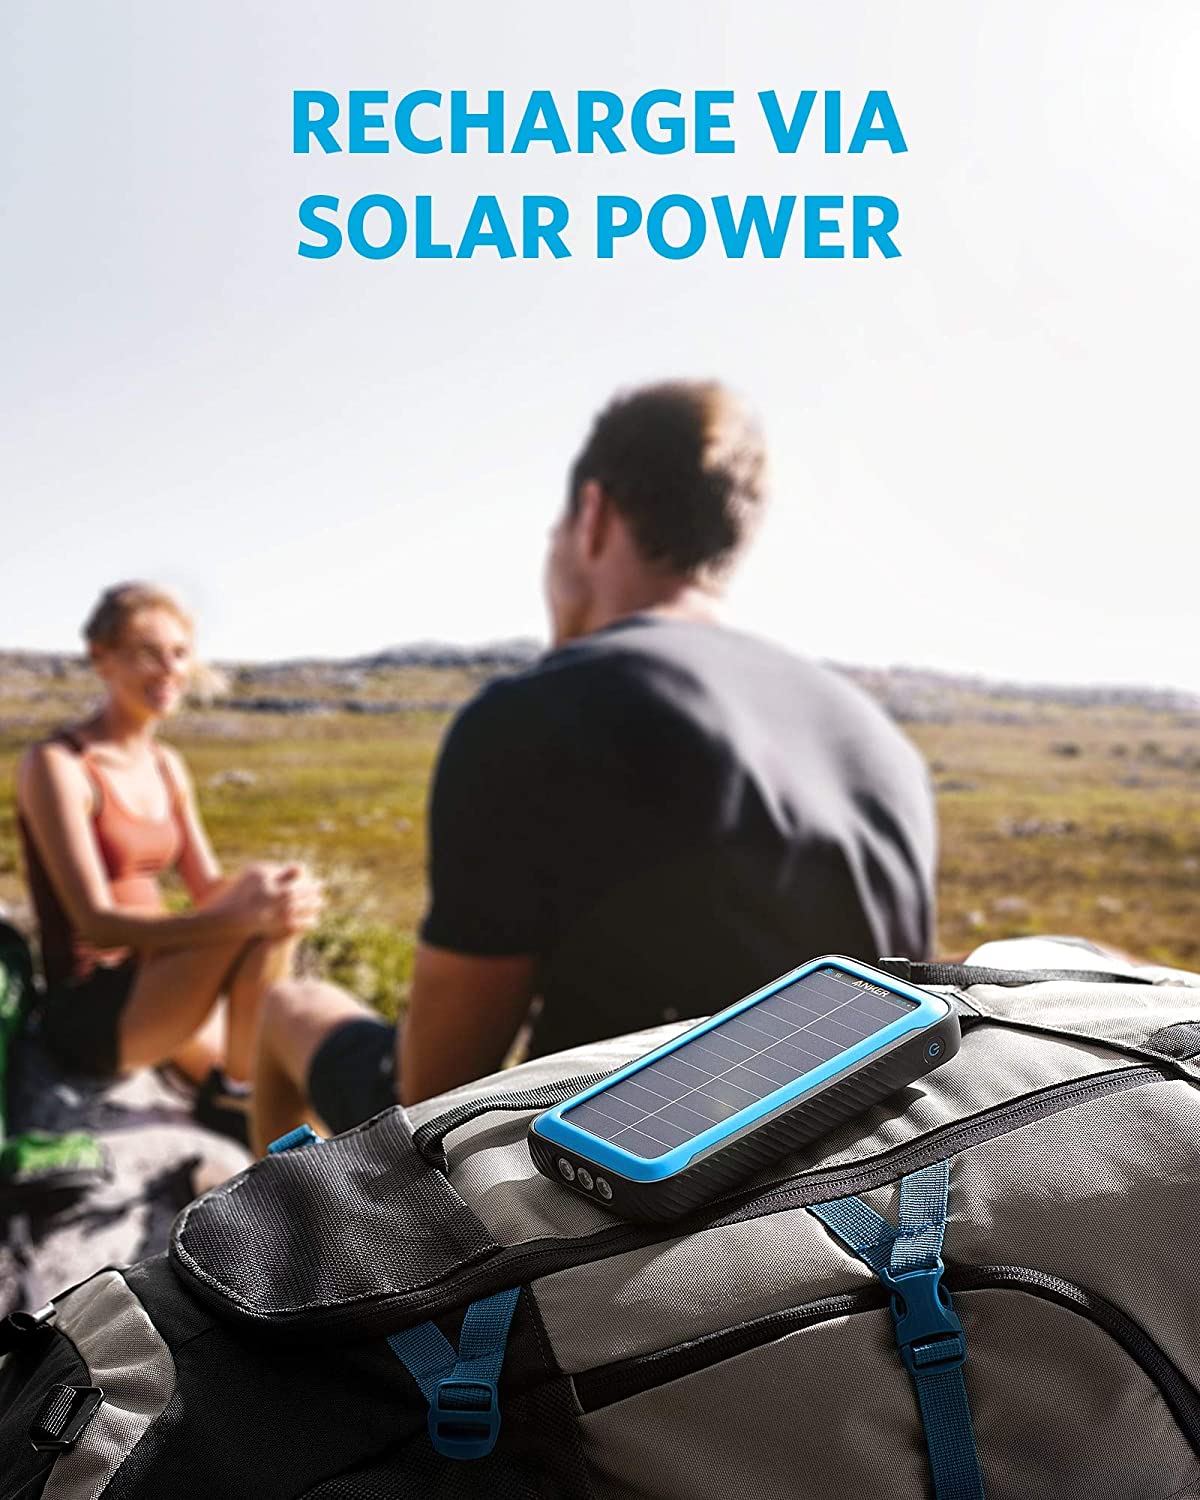 Cargador Portátil Solar Anker PowerCore de 20,000 mAh. + Linterna con Tecnología Militar IP65 Resitente al Polvo y Agua - CAT SERVICE PERU S.A.C.